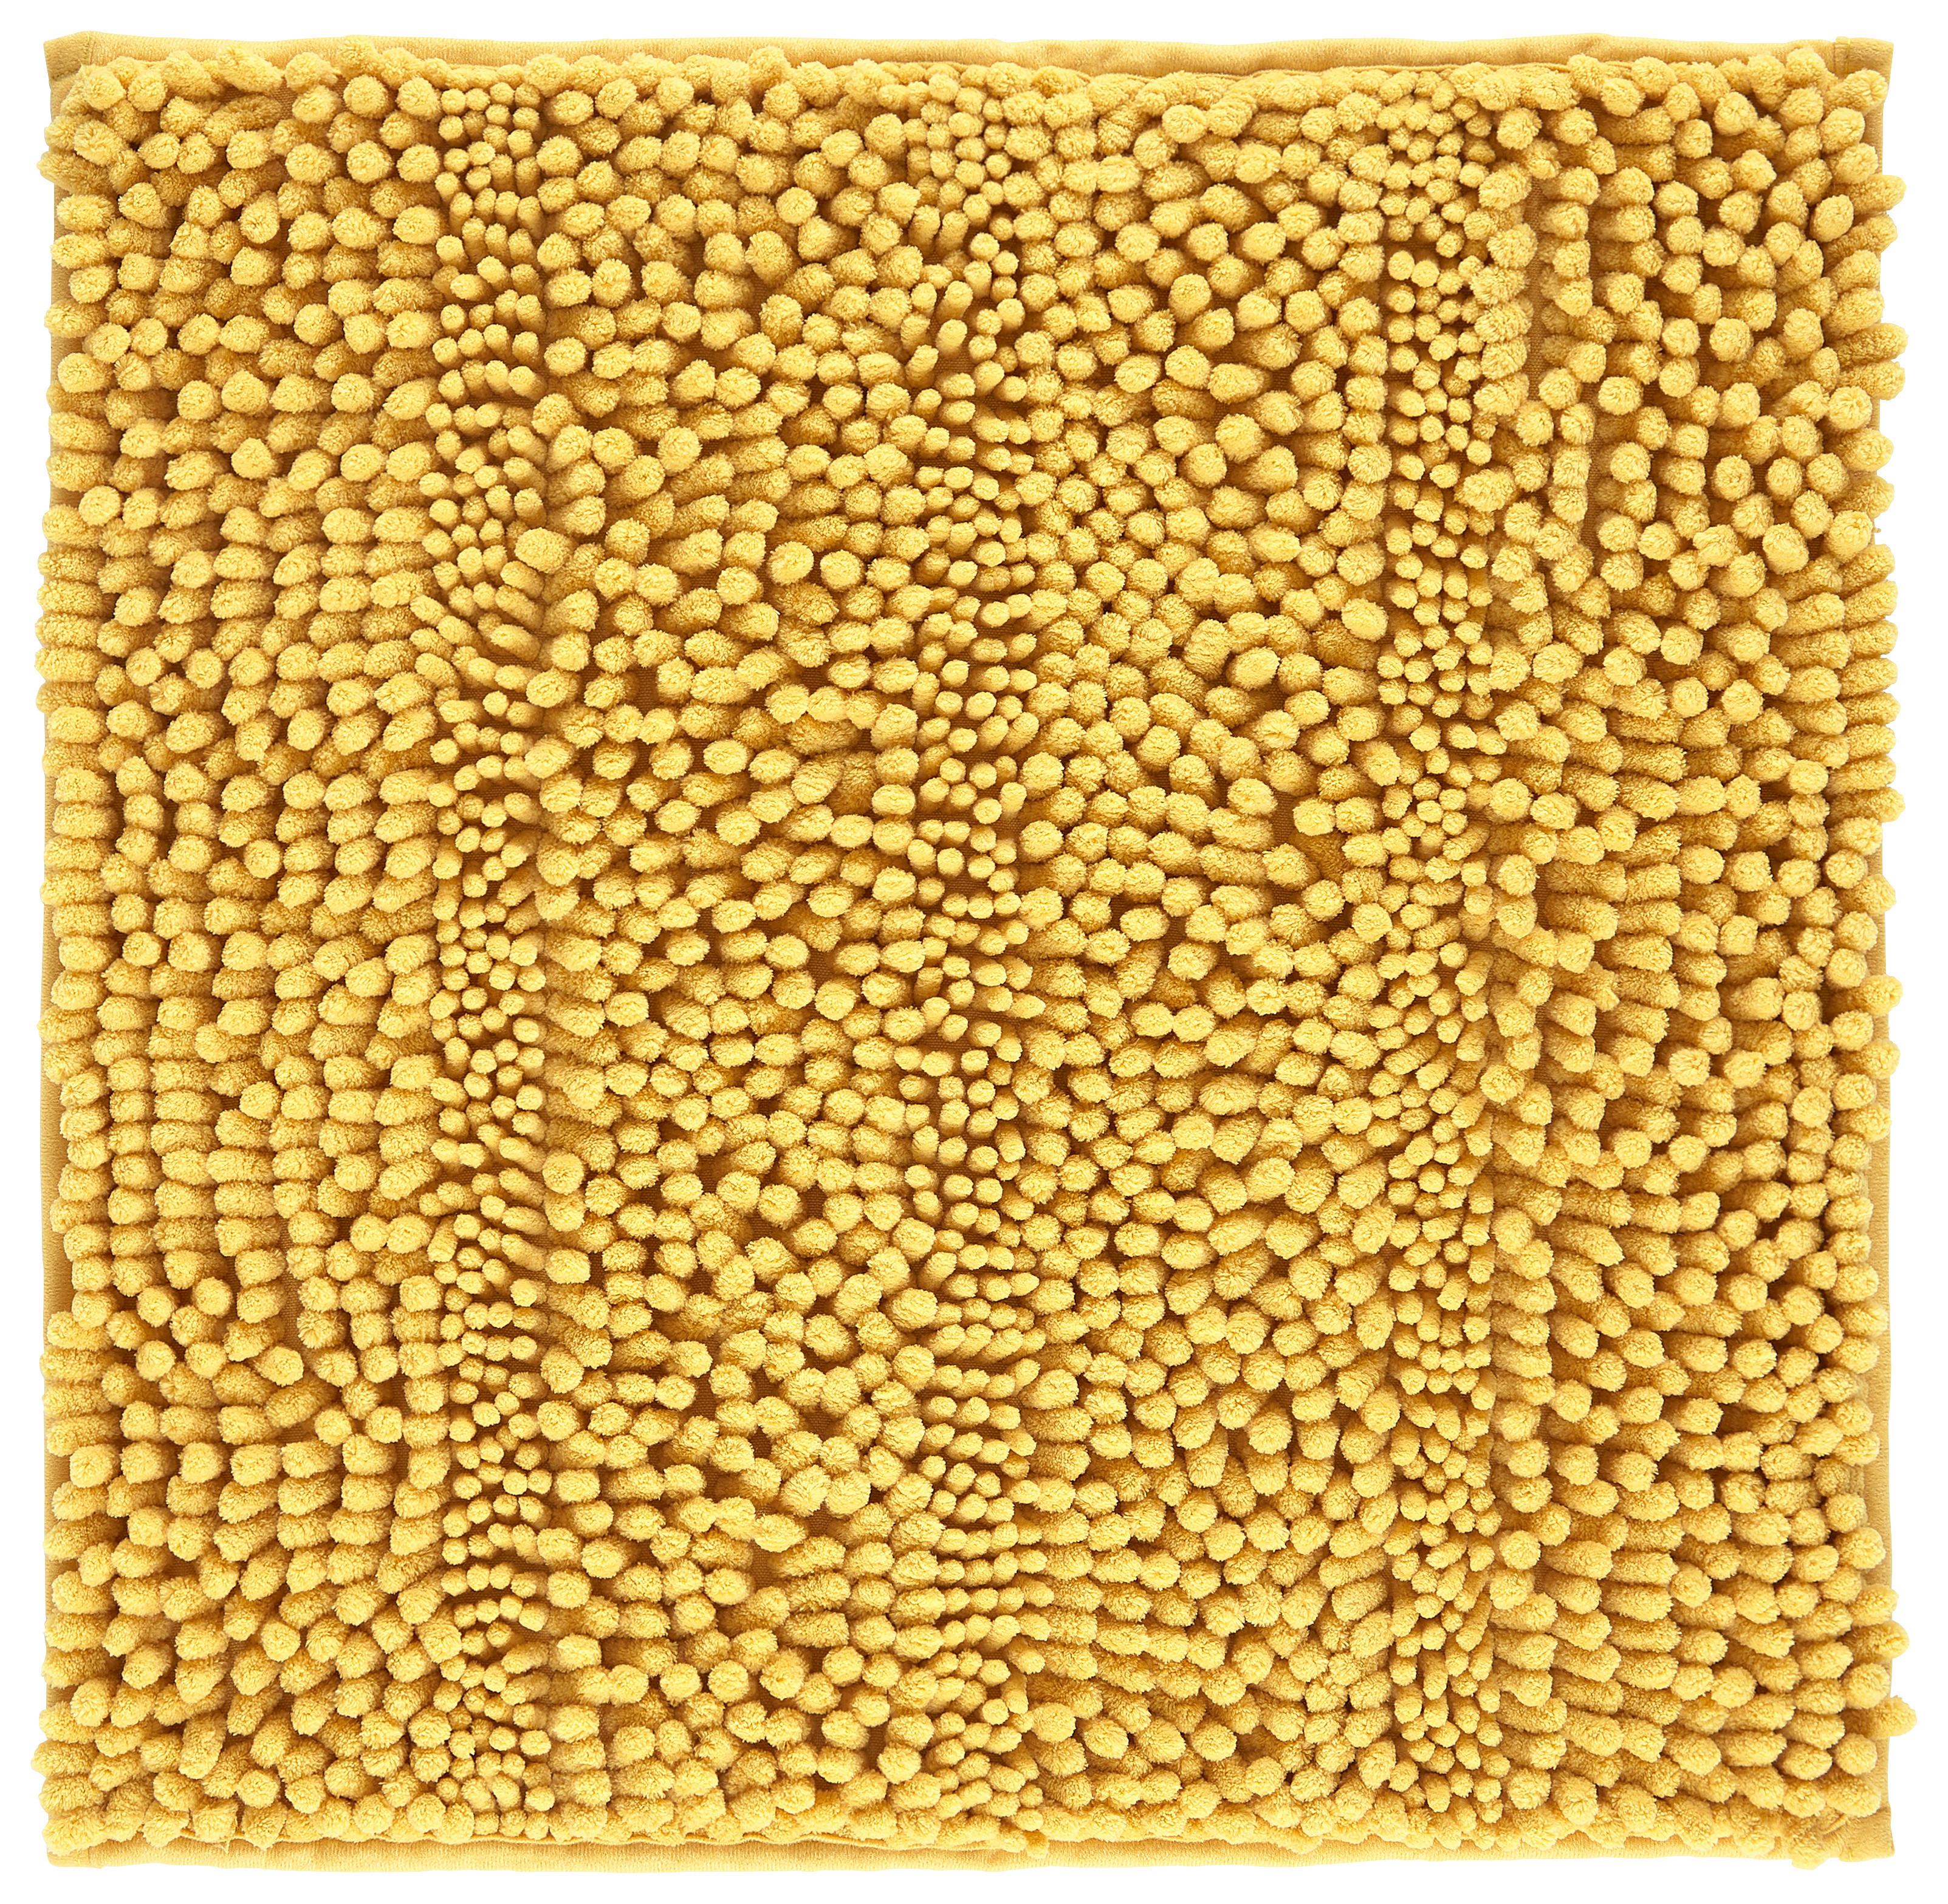 Fürdőszobaszőnyeg Uwe 50/50cm - sárga, Basics, textil (50/50cm) - Modern Living